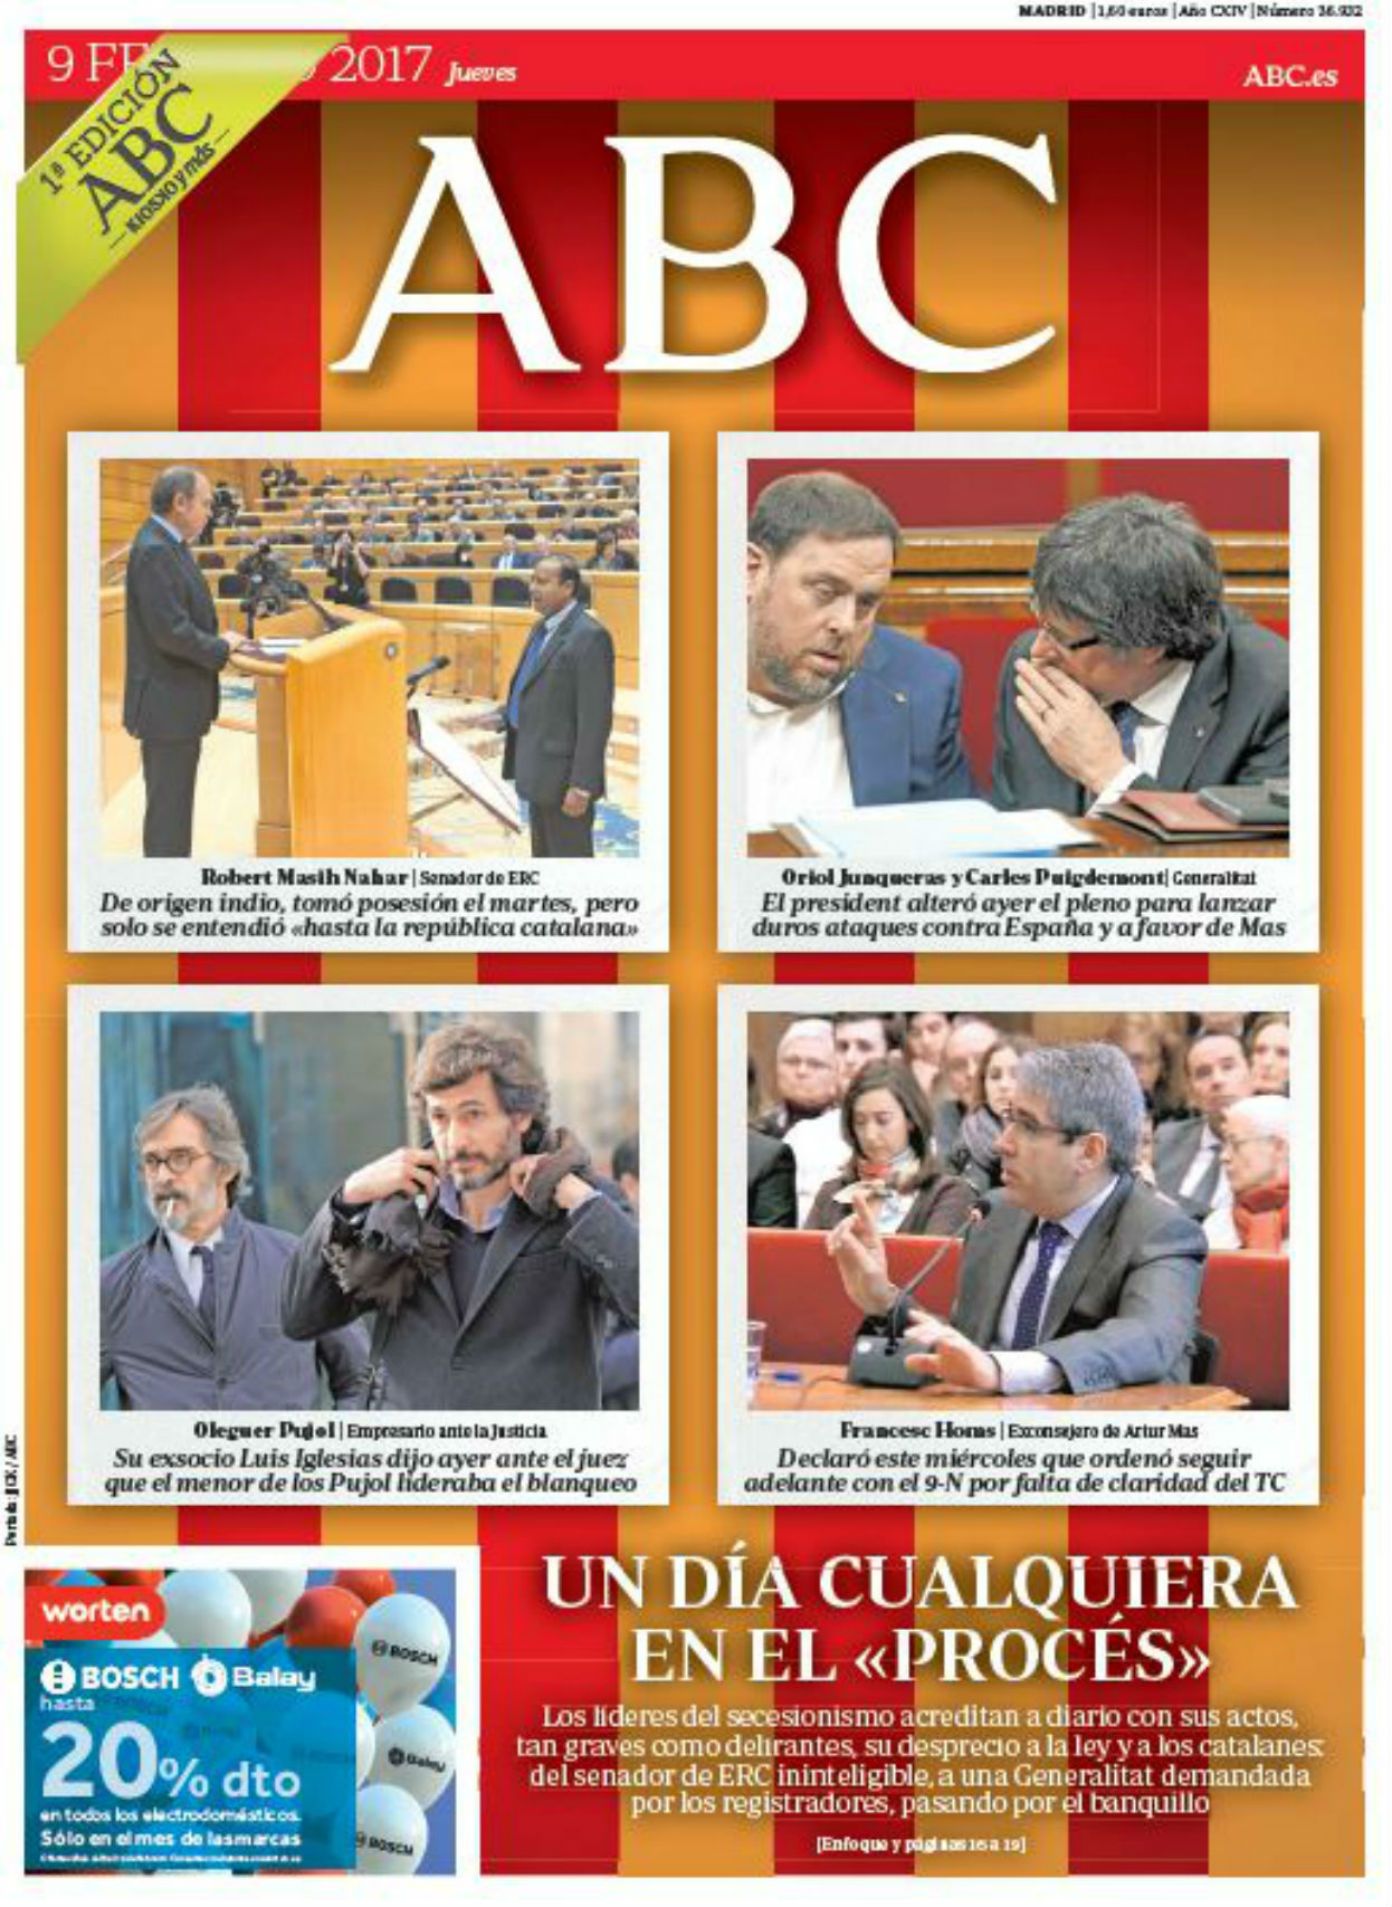 "La política o la força a Catalunya", a la premsa estatal